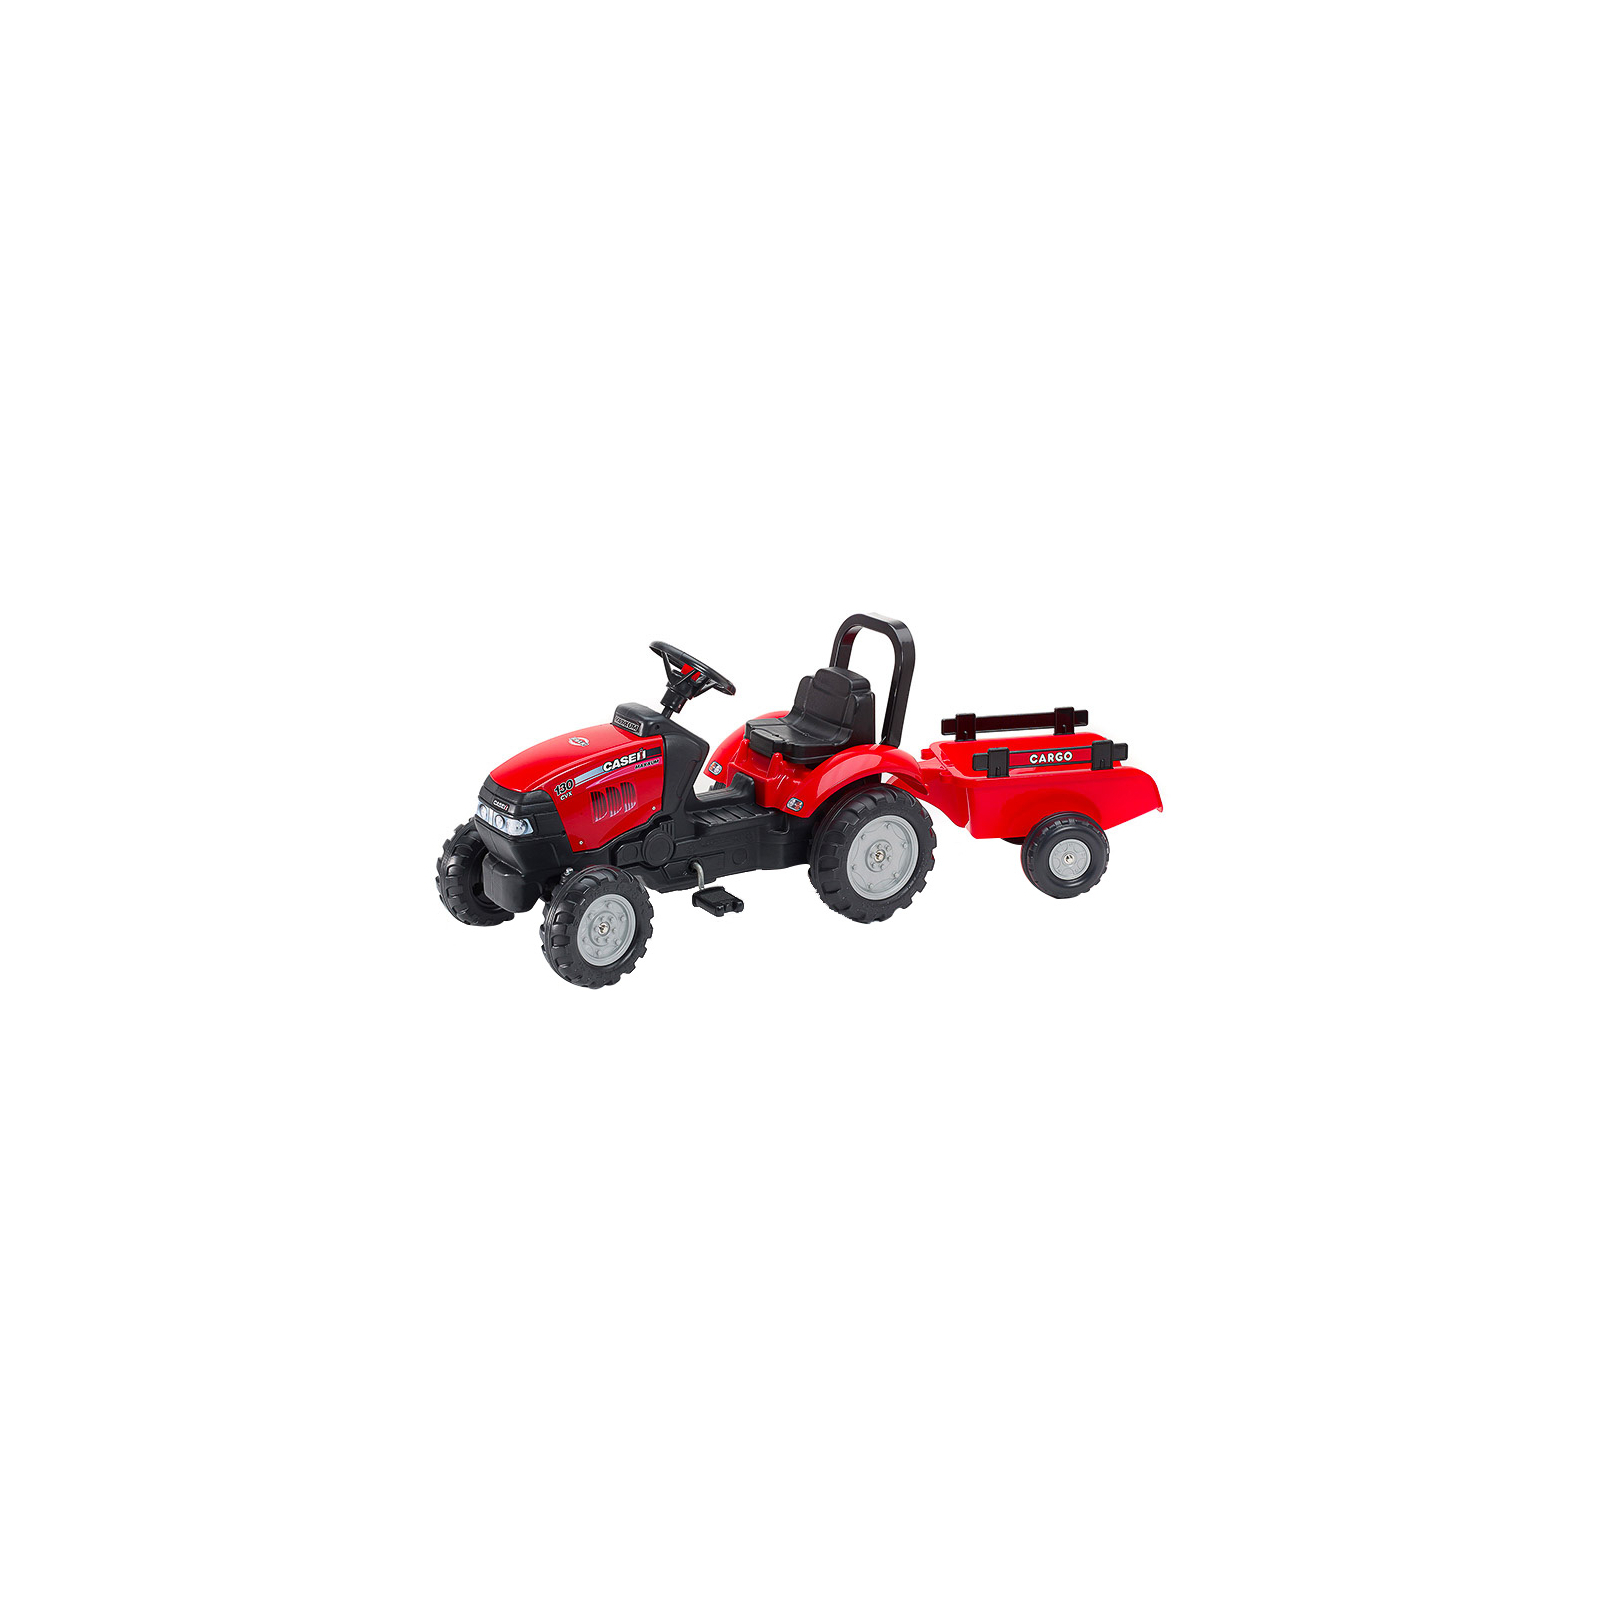 Веломобиль Falk Case IH трактор на педалях с прицепом красный (961B)